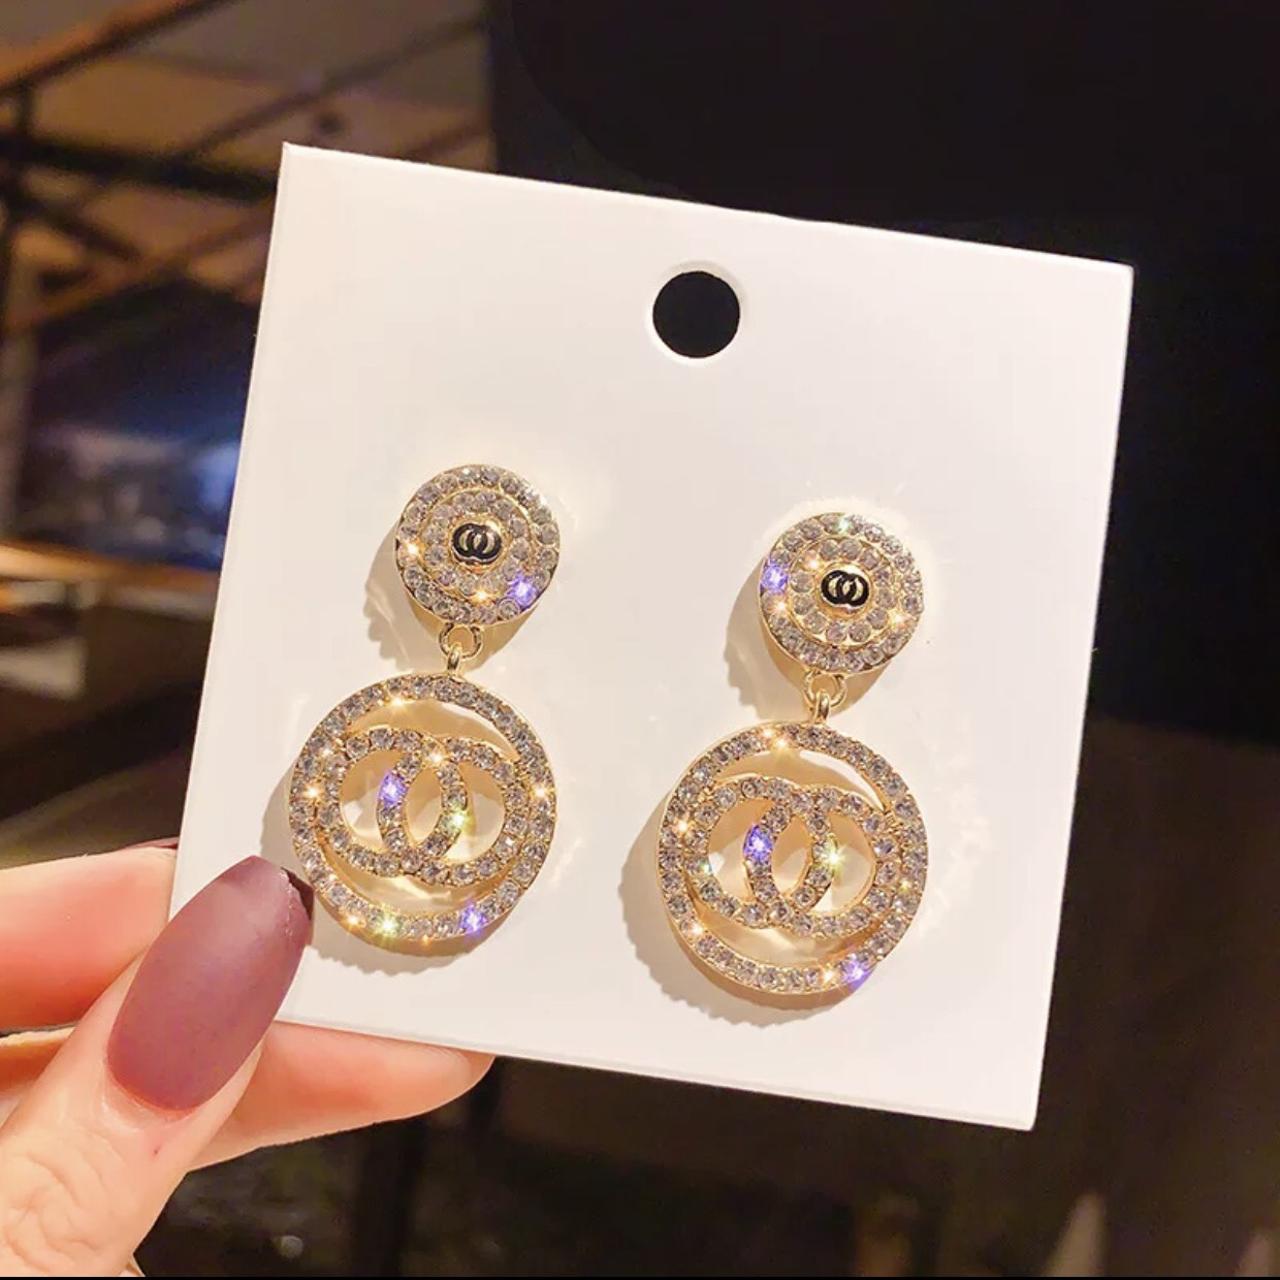 Luxury Rhinestone Chanel inspired Earrings for Women - Depop